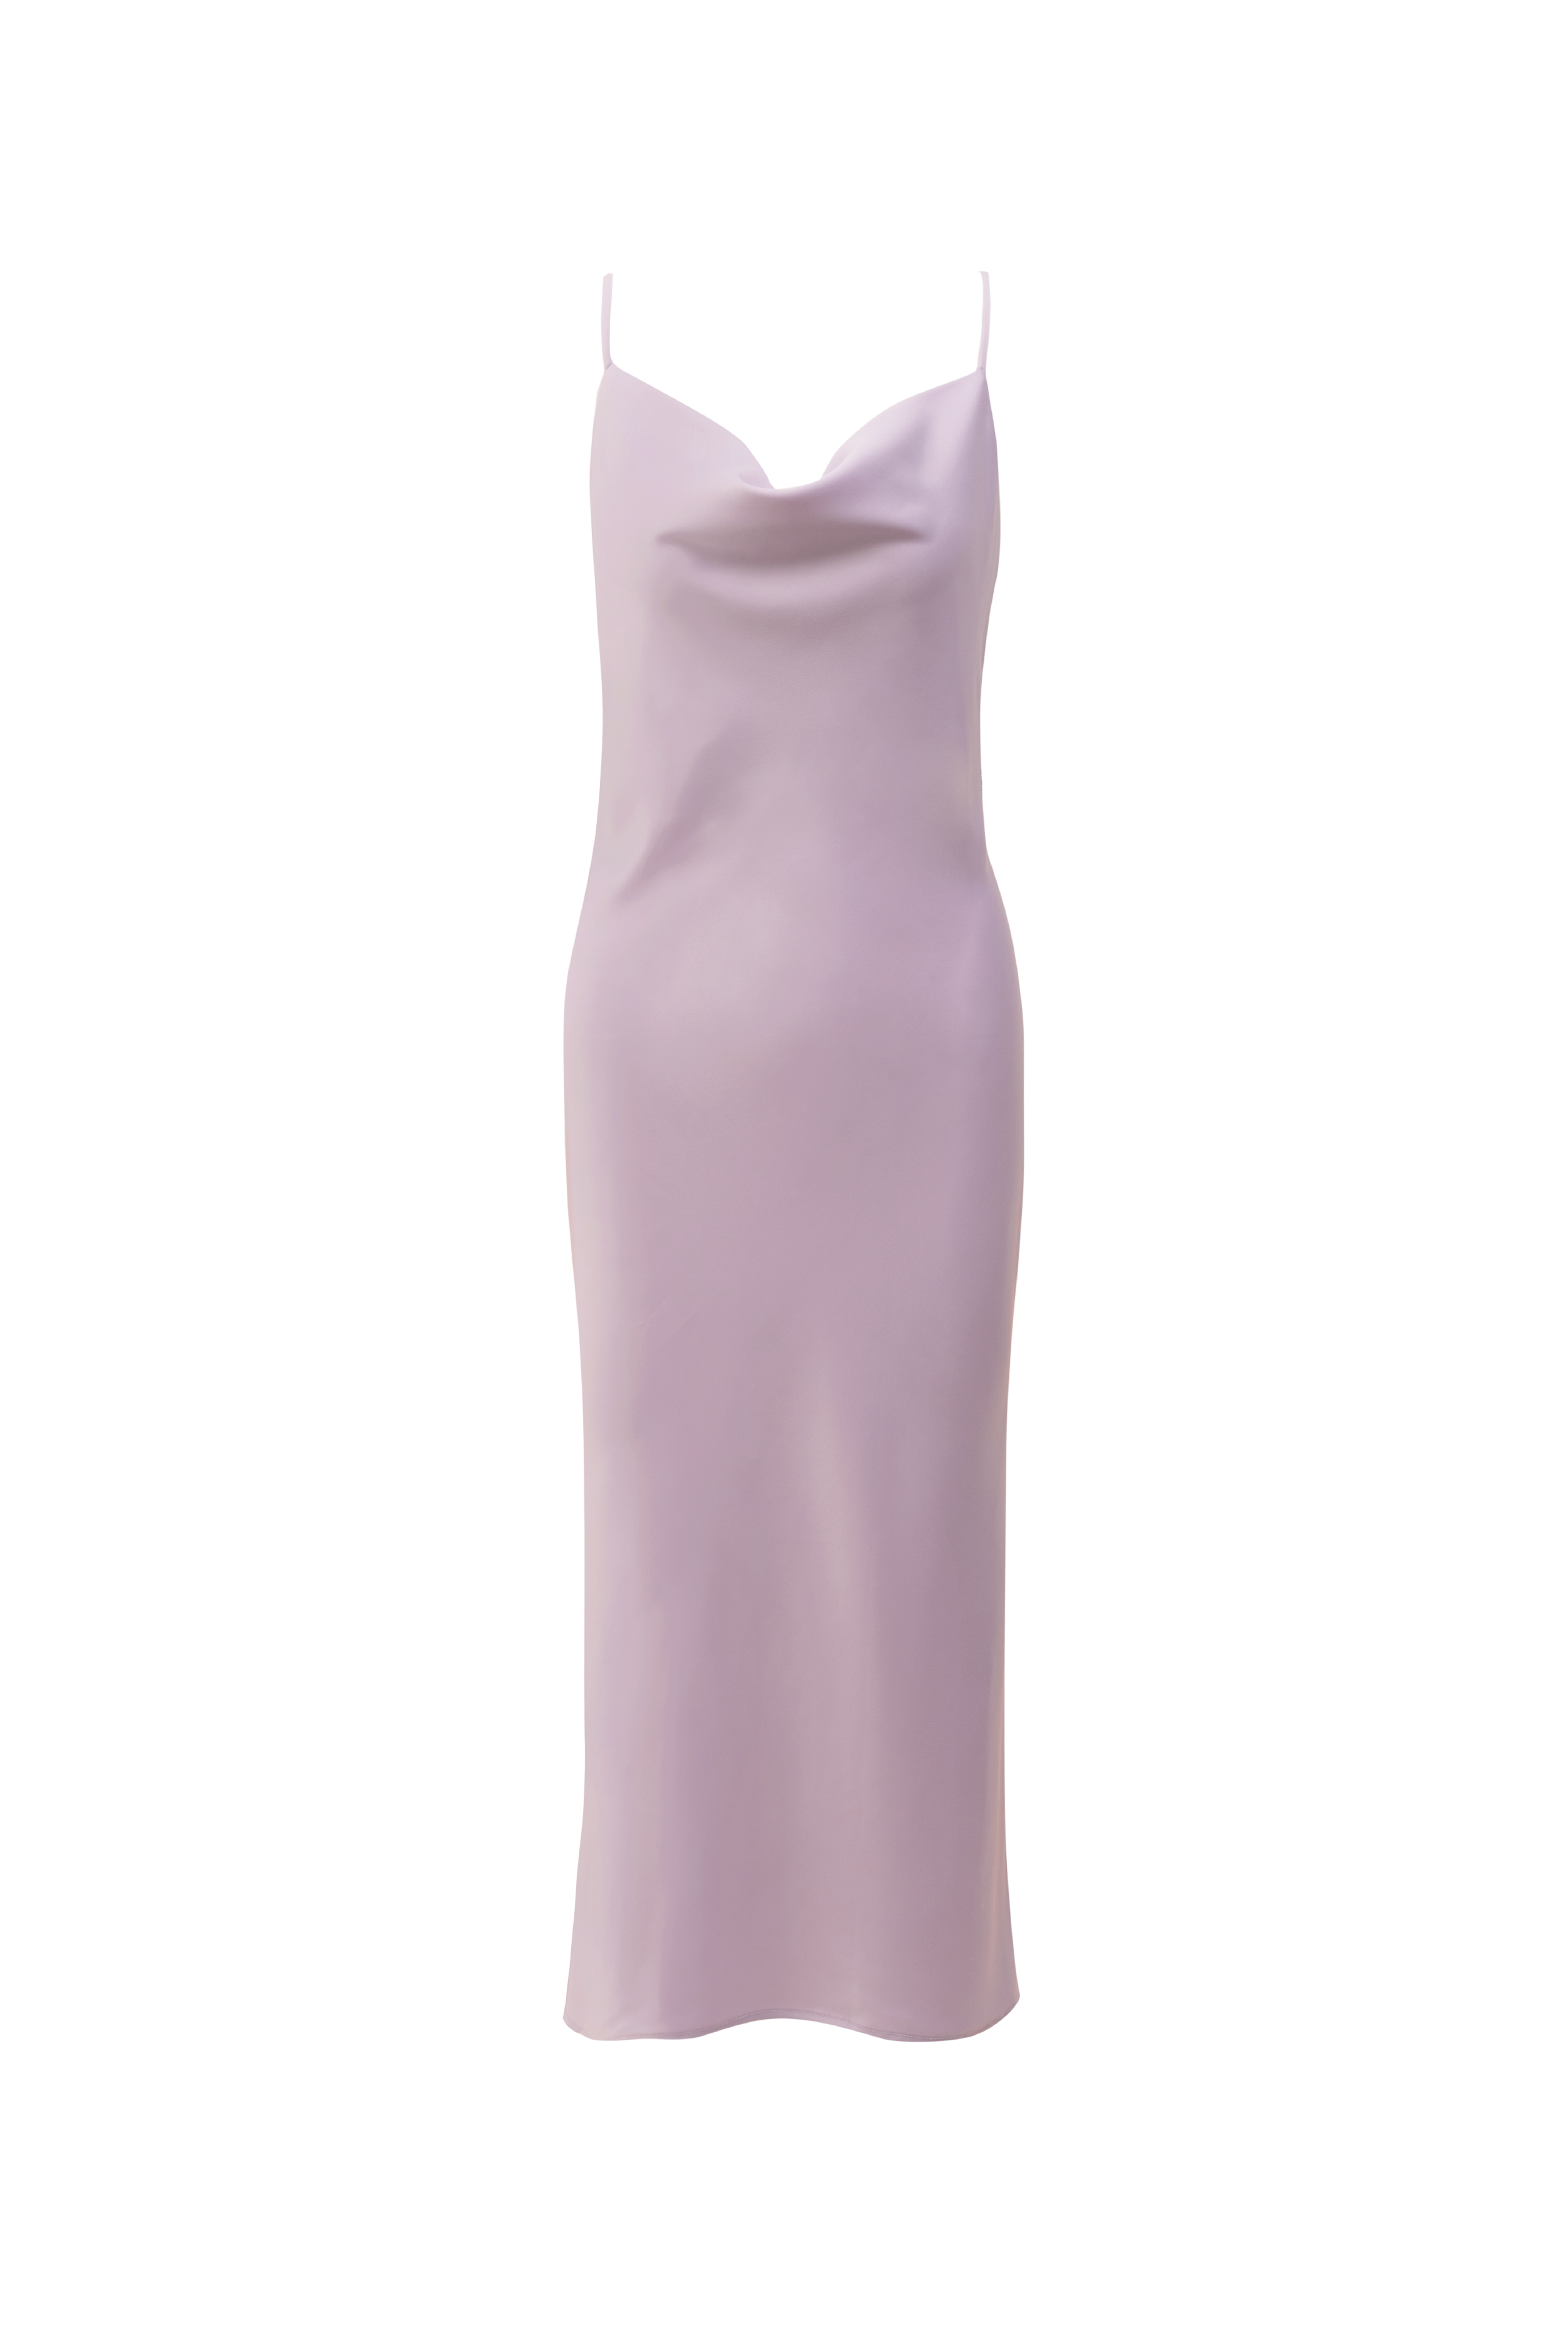 PAIGE Dress - Lilac